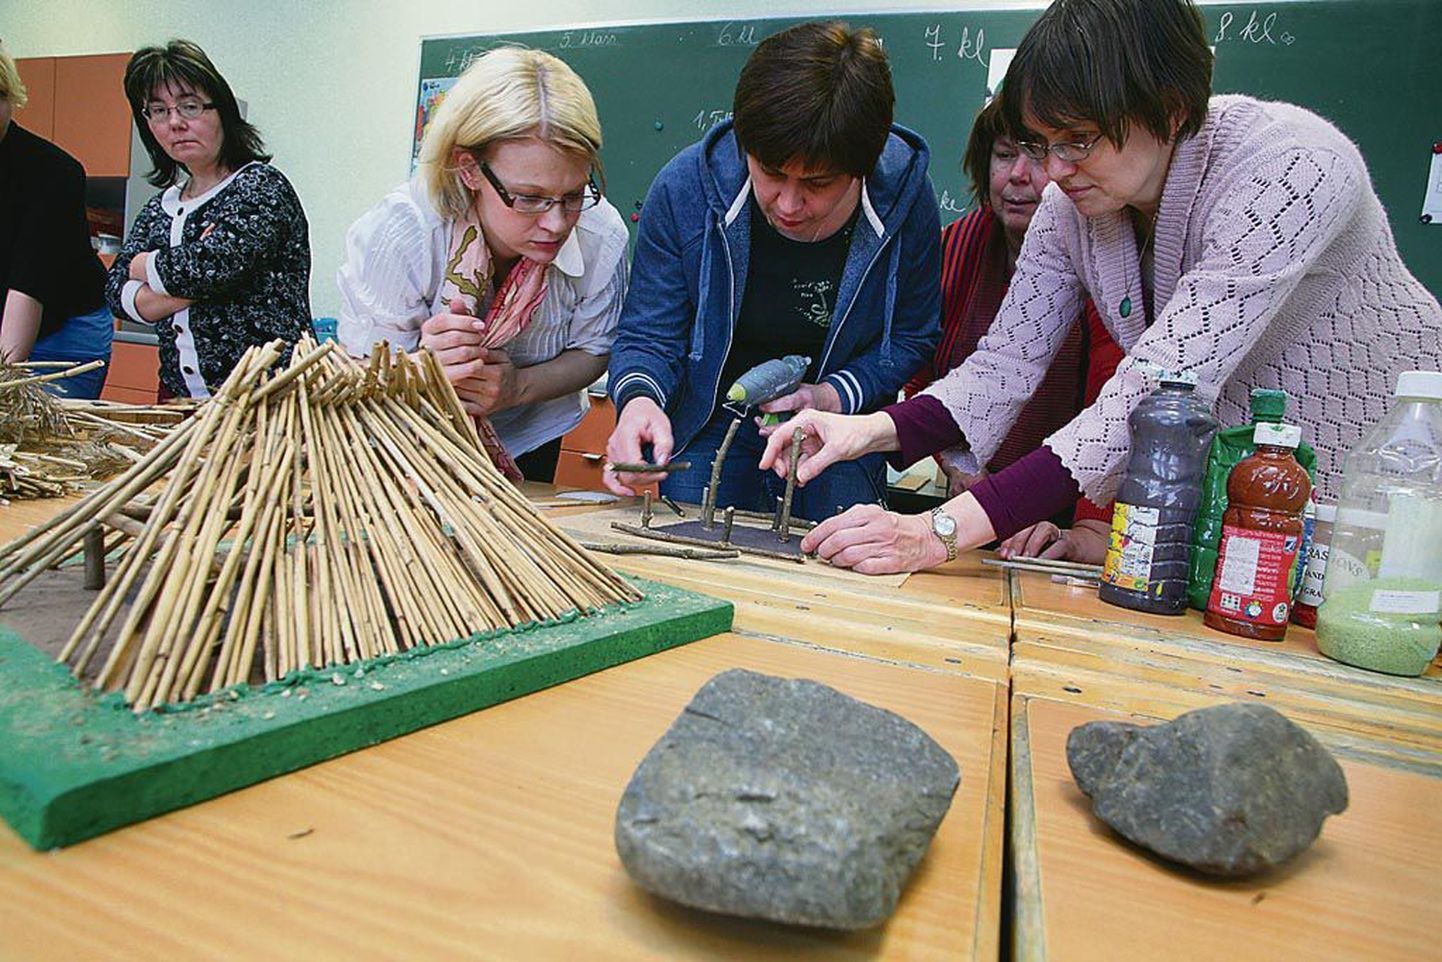 Õpikodade tulevased juhendajad valmistasid kiviaegse elamu makette ja proovisid jõudu kivikirvega.